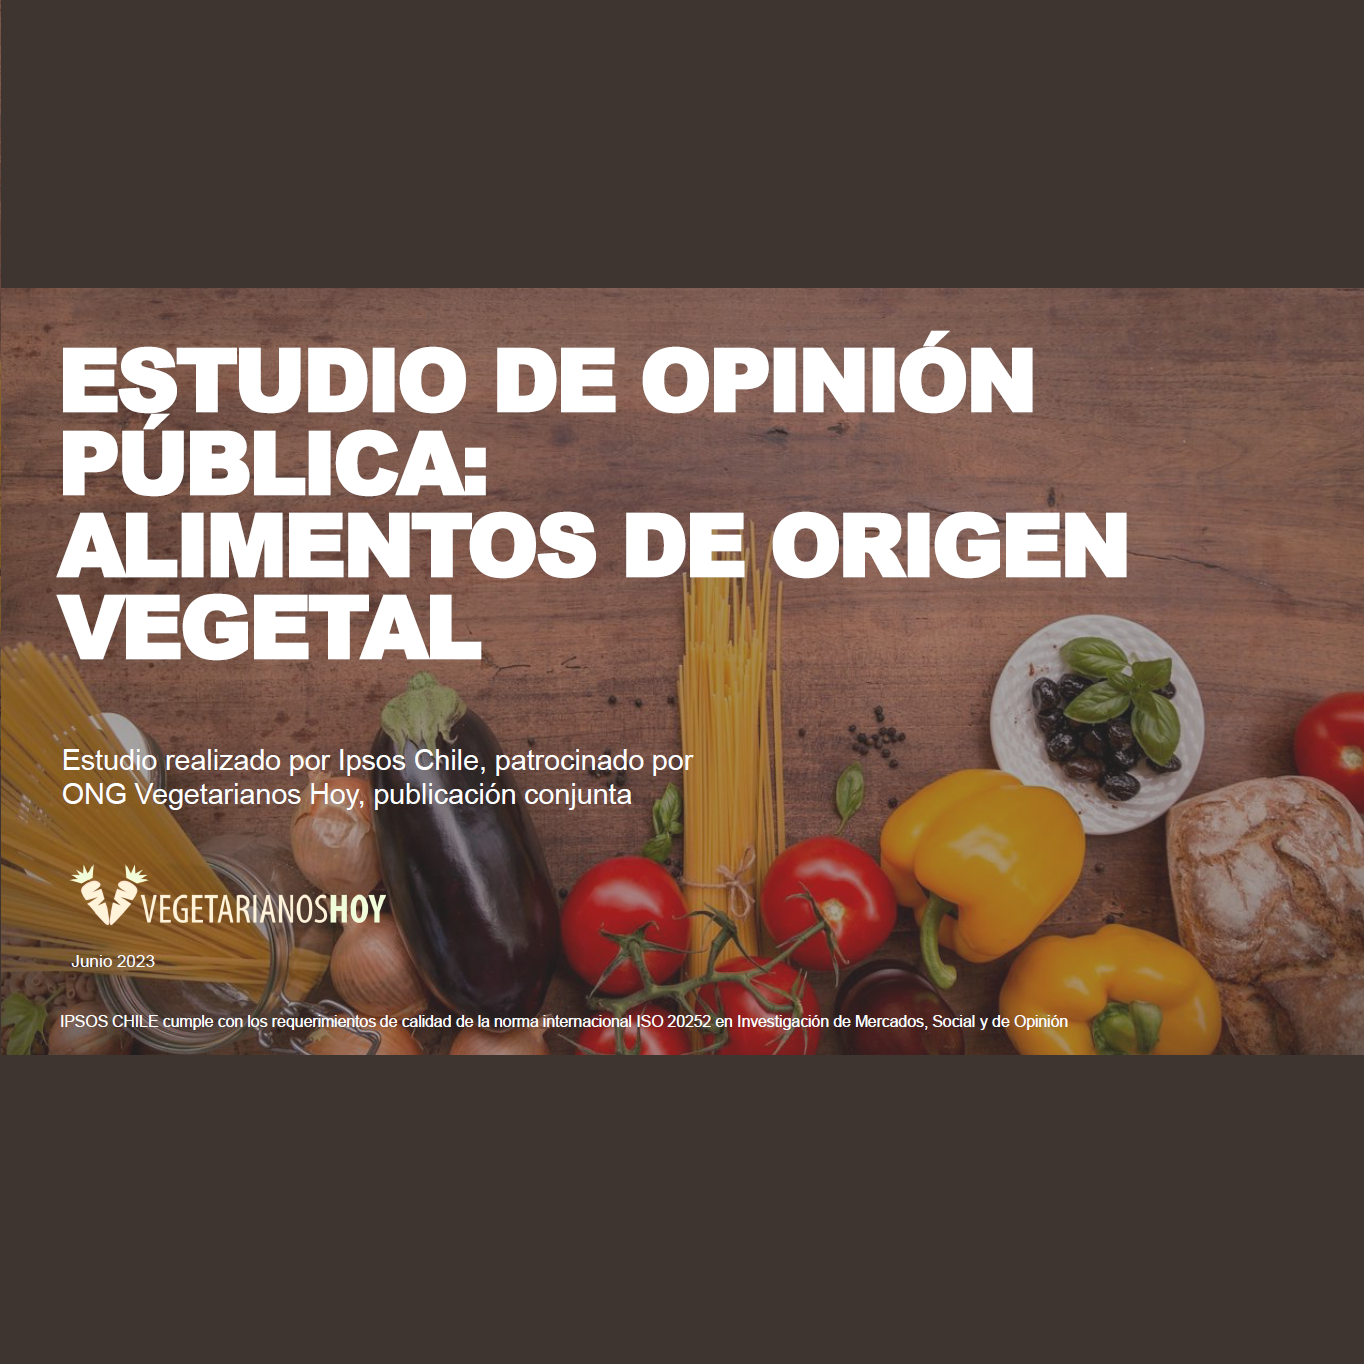 Estudio: Estudio de Opinión Pública: Alimentos de Origen Vegetal